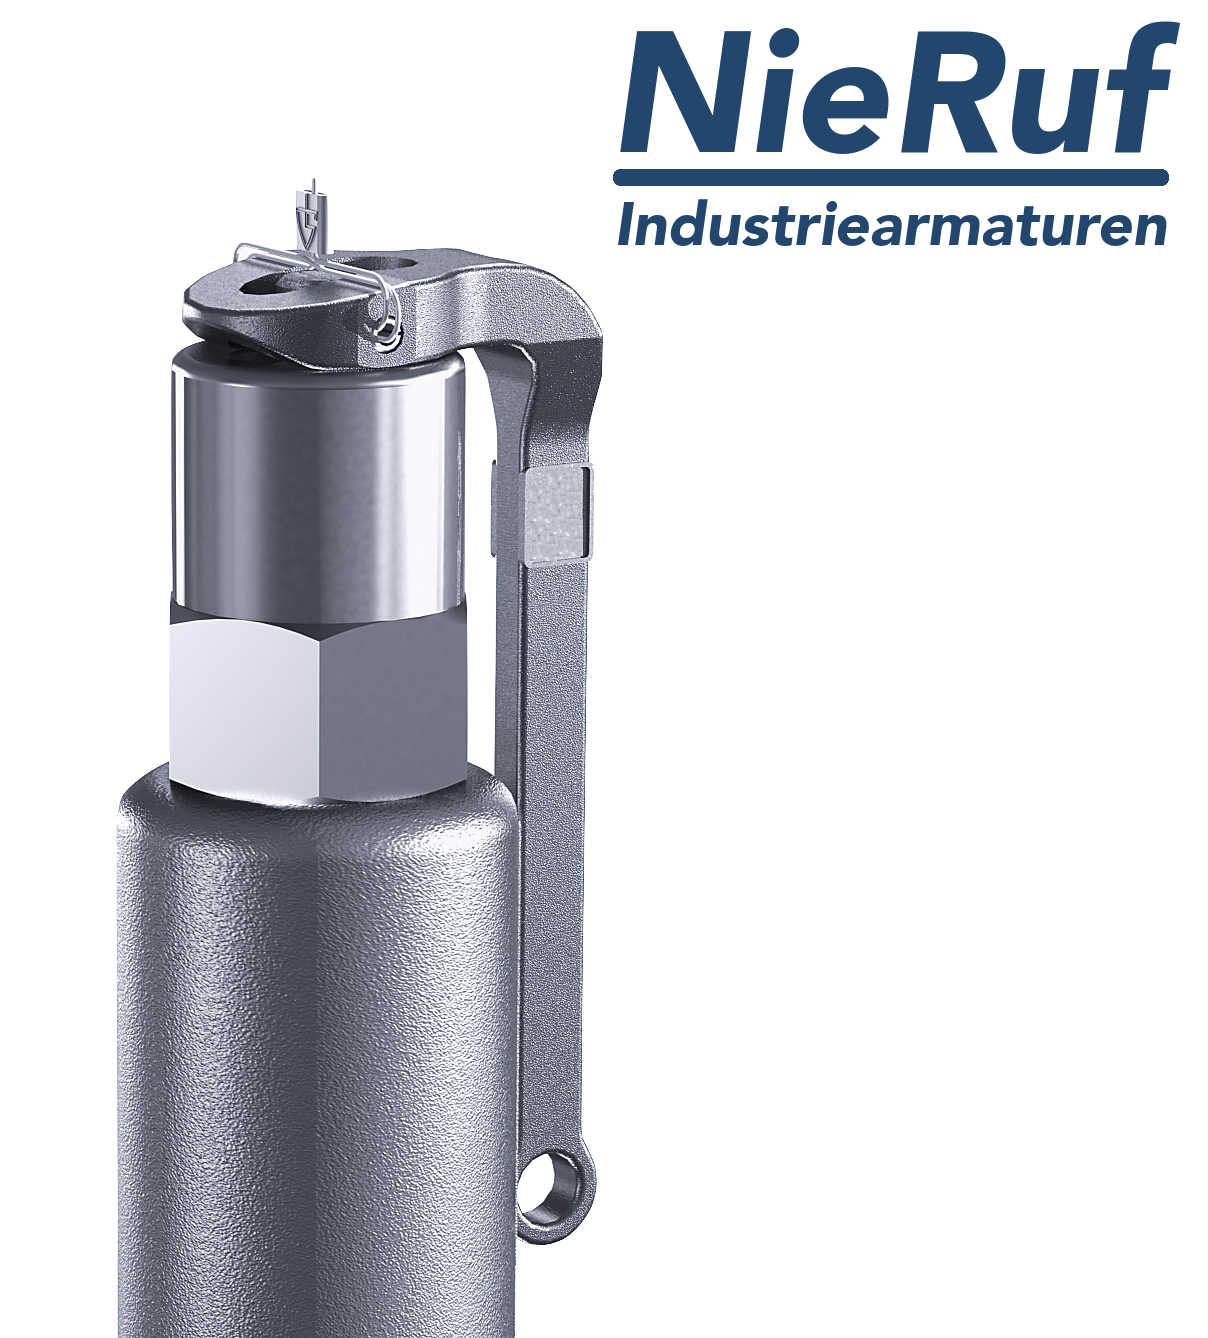 valvola di sicurezza 1/2" x 1" F SV05 fluidi liquidi neutri, acciaio inox NBR, con leva